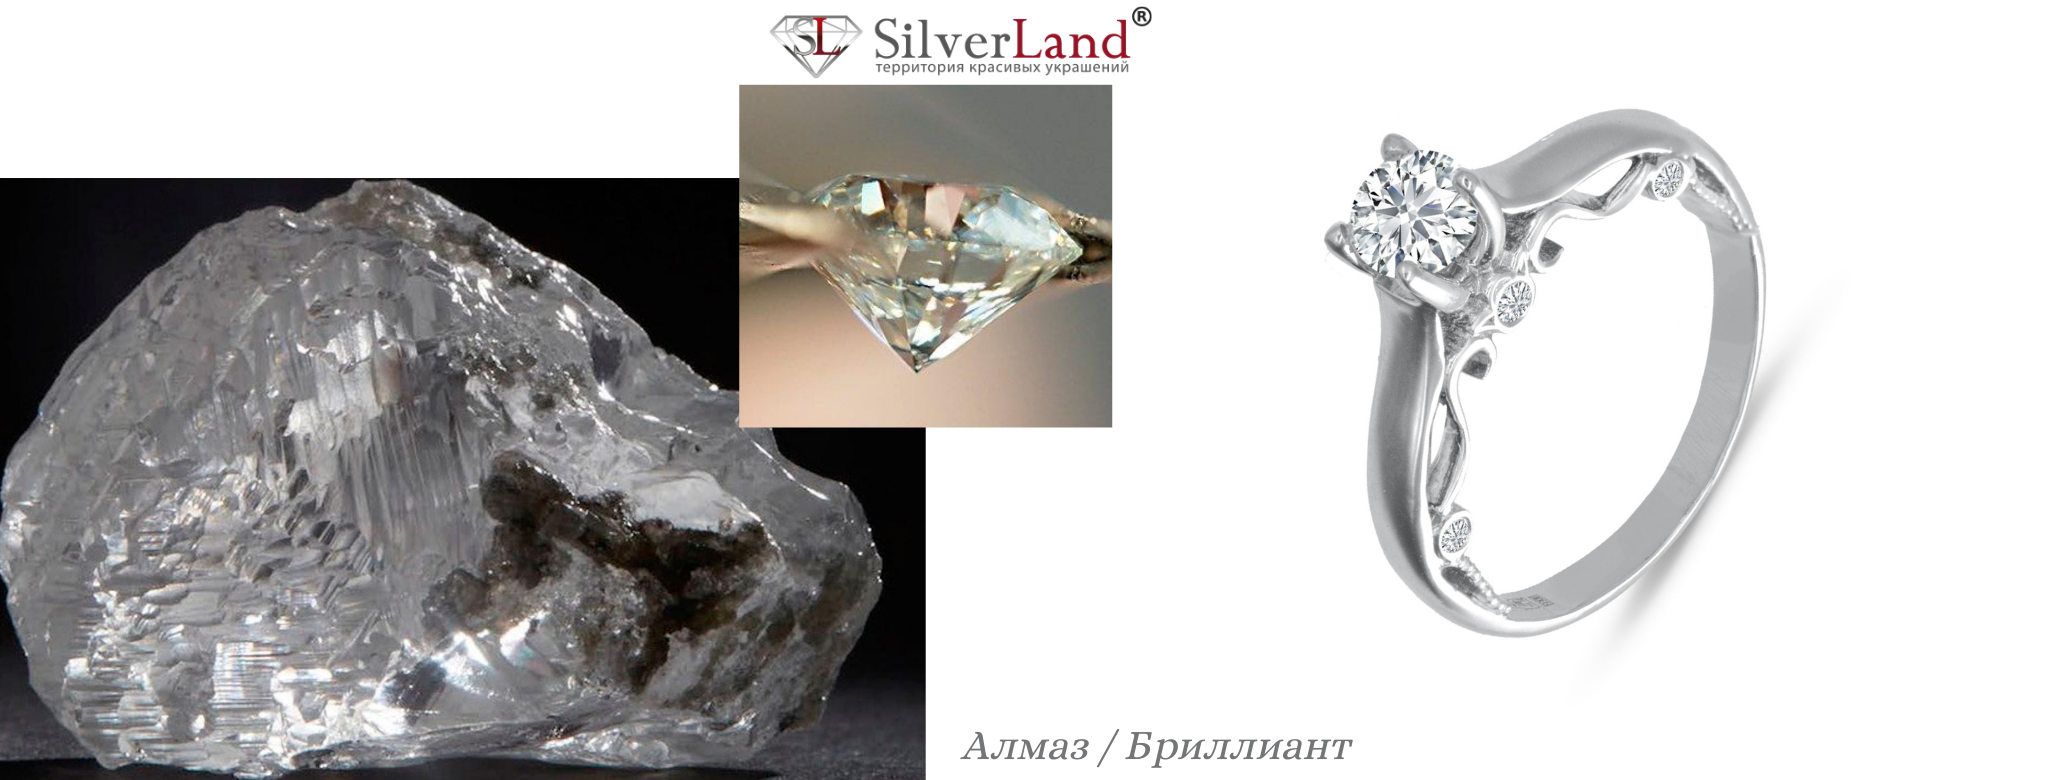 малюнок види дорогоцінного каміння алмаз діамант в ювелірних виробах